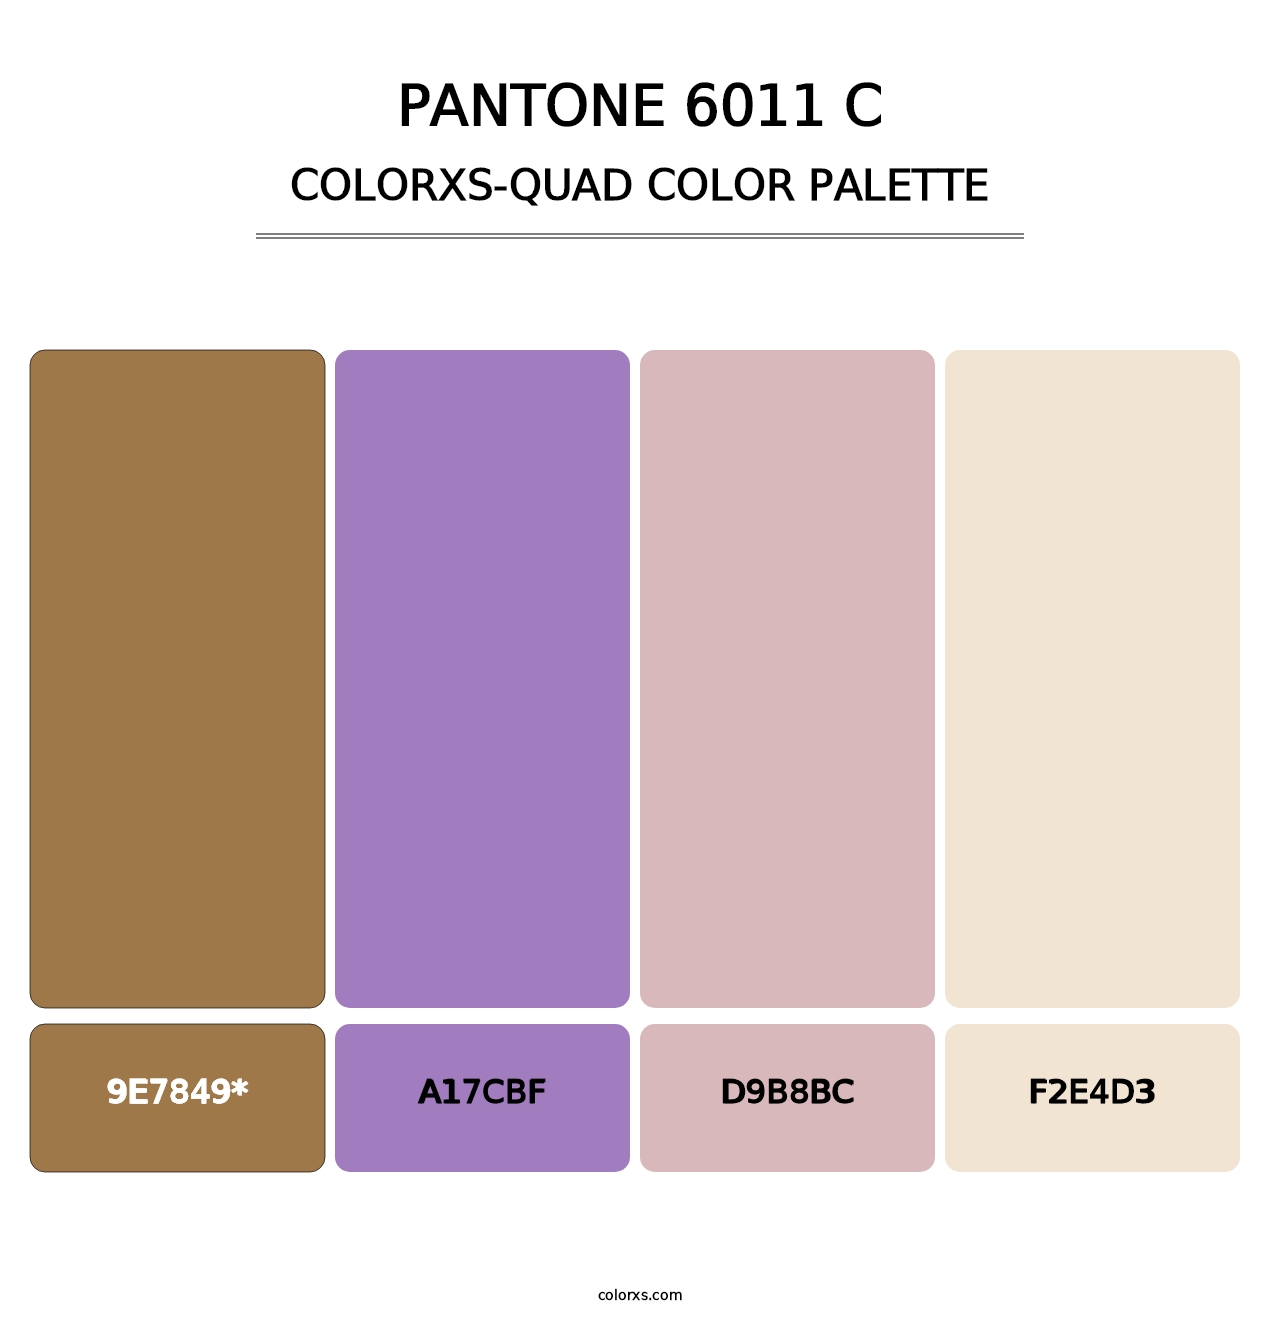 PANTONE 6011 C - Colorxs Quad Palette